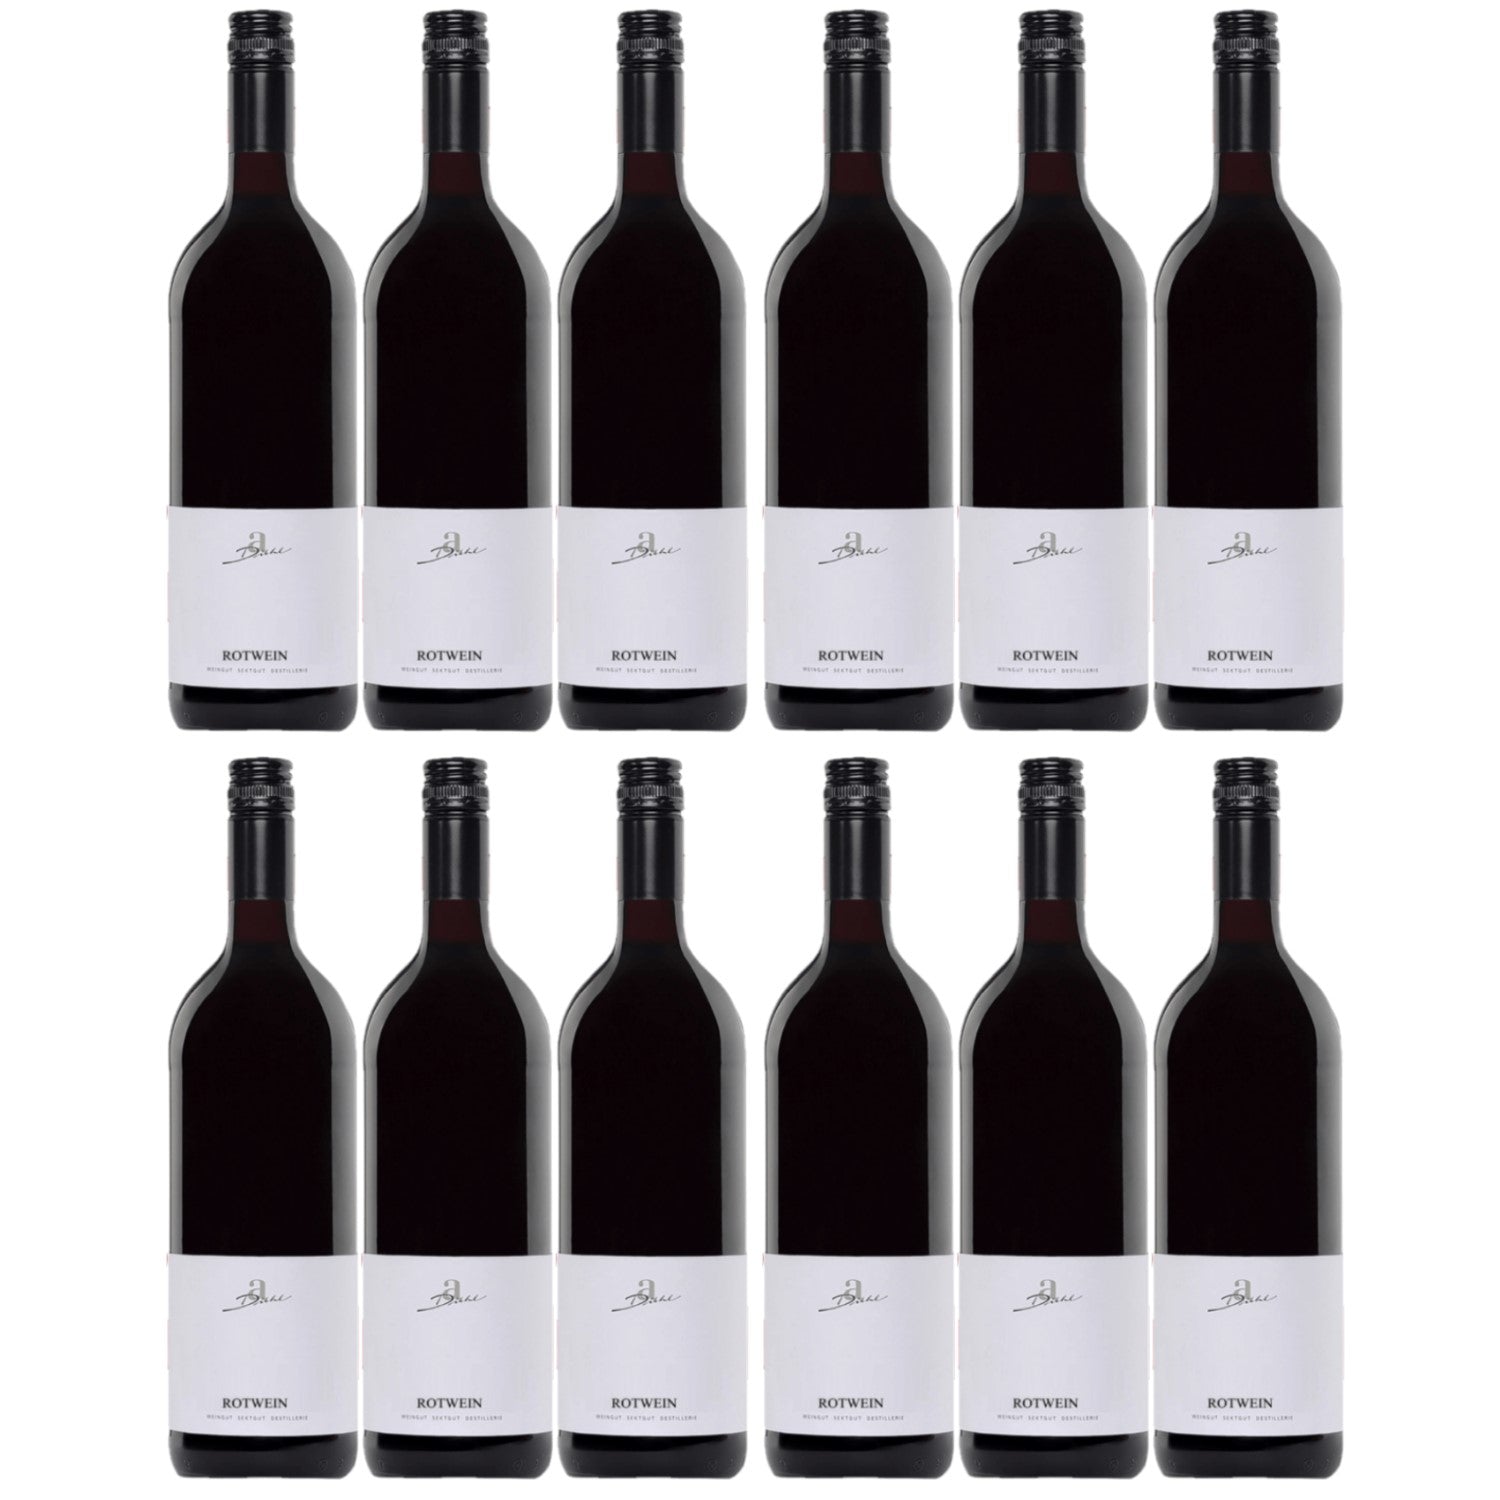 A. Diehl Rotwein Cuvée süss Pfalz Dt. Qualitätswein (12 x 1.0l) - Versanel -